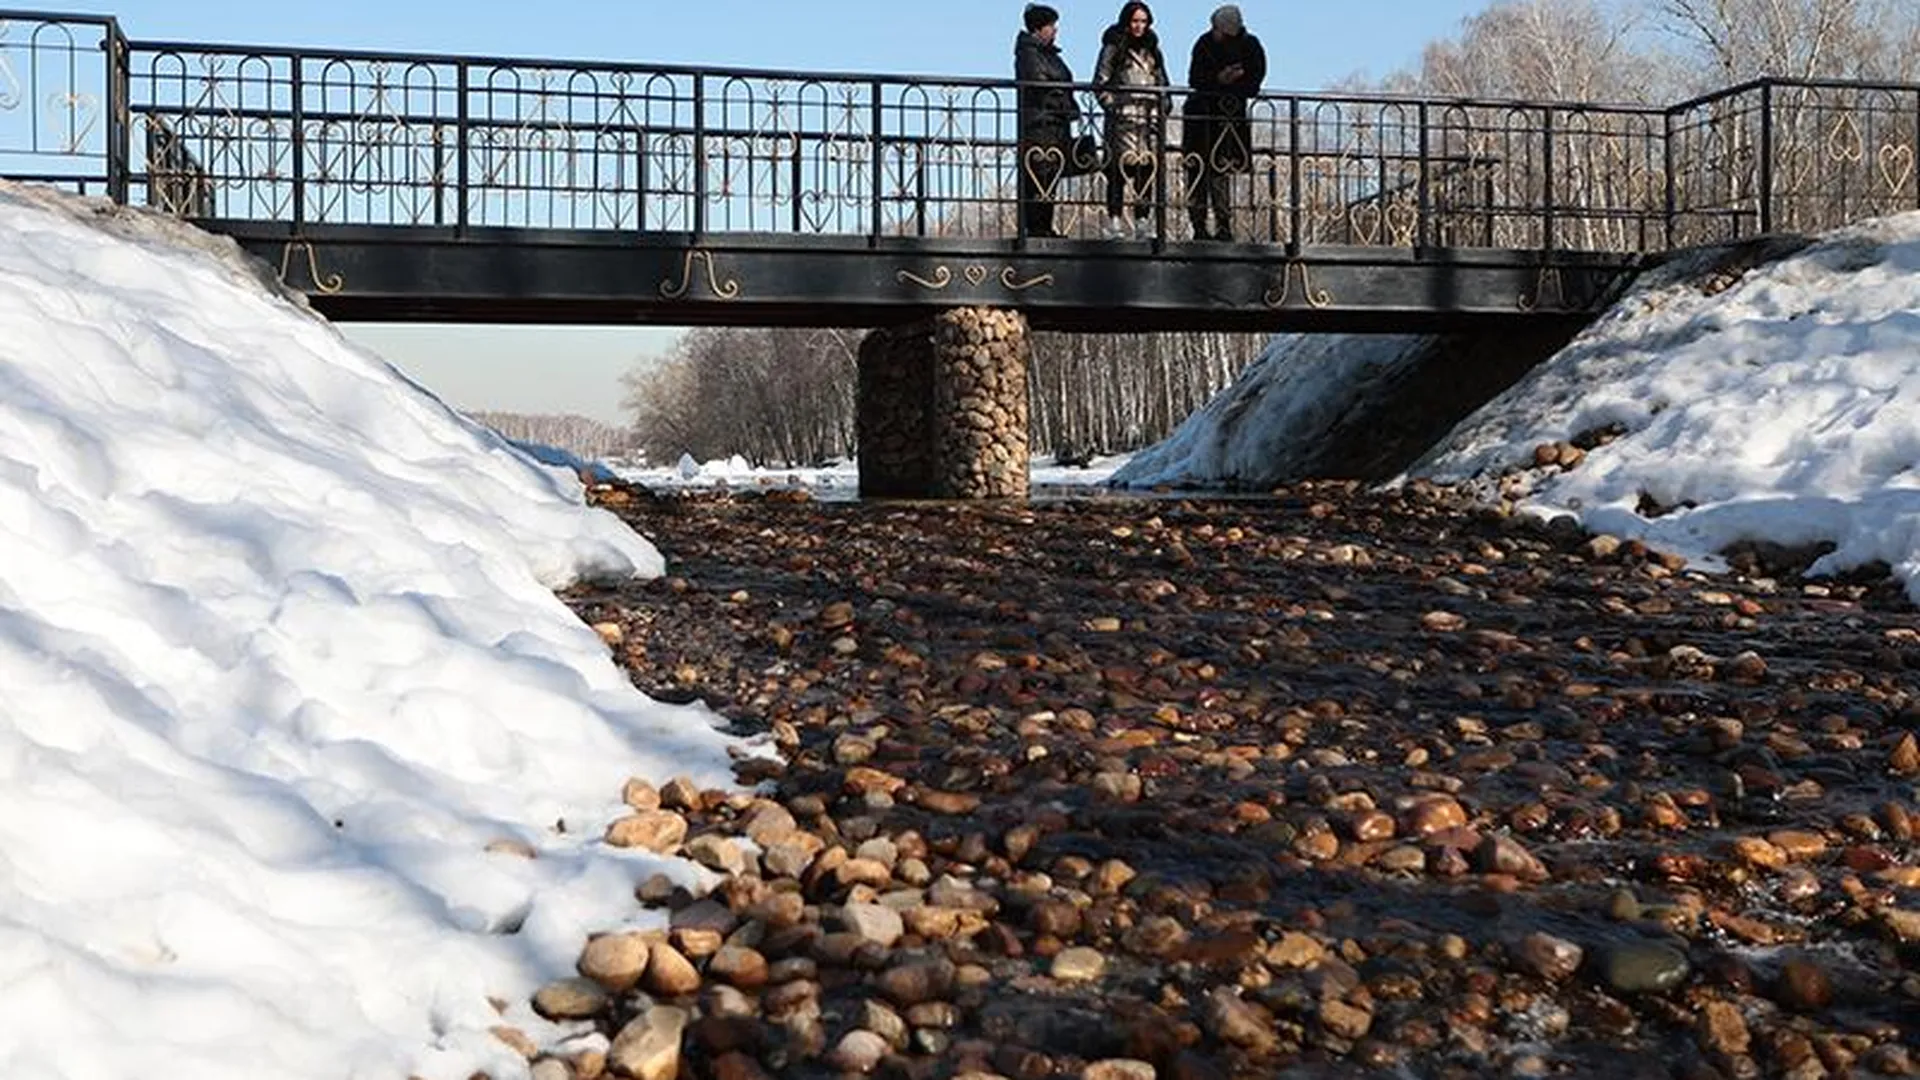 Нрав Македонки: специалисты Минэкологии Подмосковья в преддверии половодья проверили самую опасную реку в Люберцах  